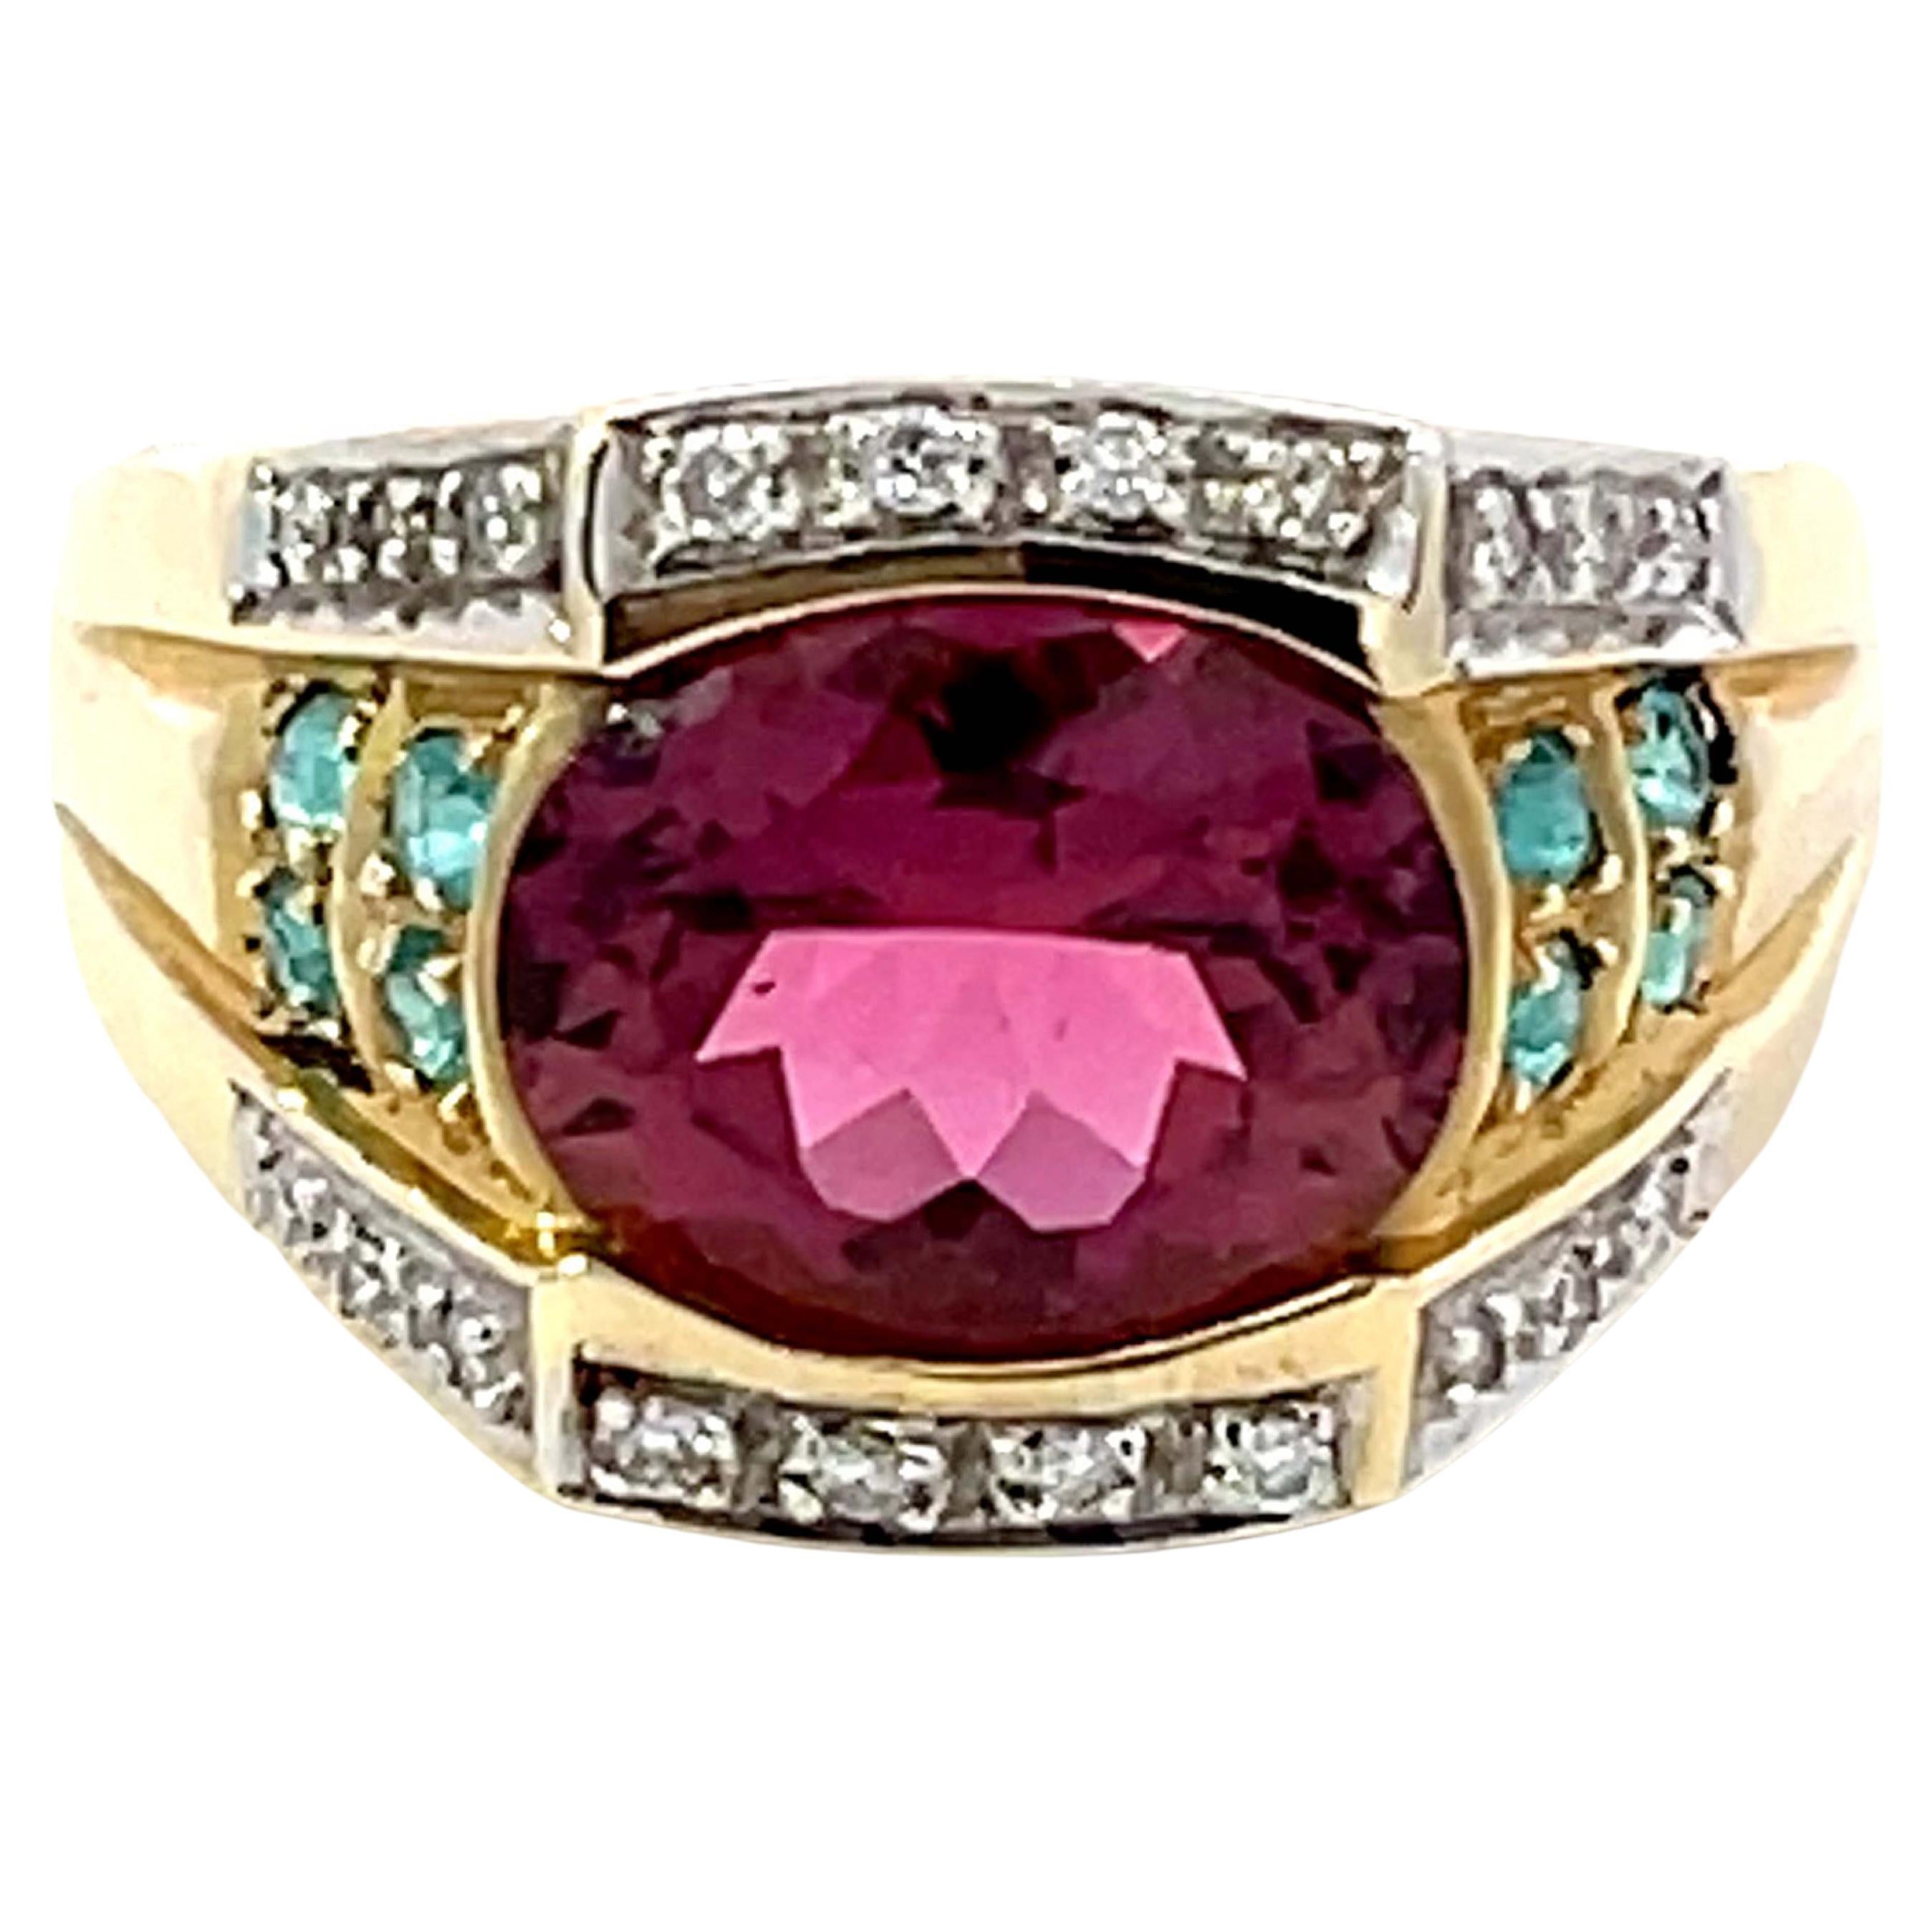 Pink Rubellite Garnet, Blue Paraiba Tourmaline, Diamond Ring in 14k Yellow Gold